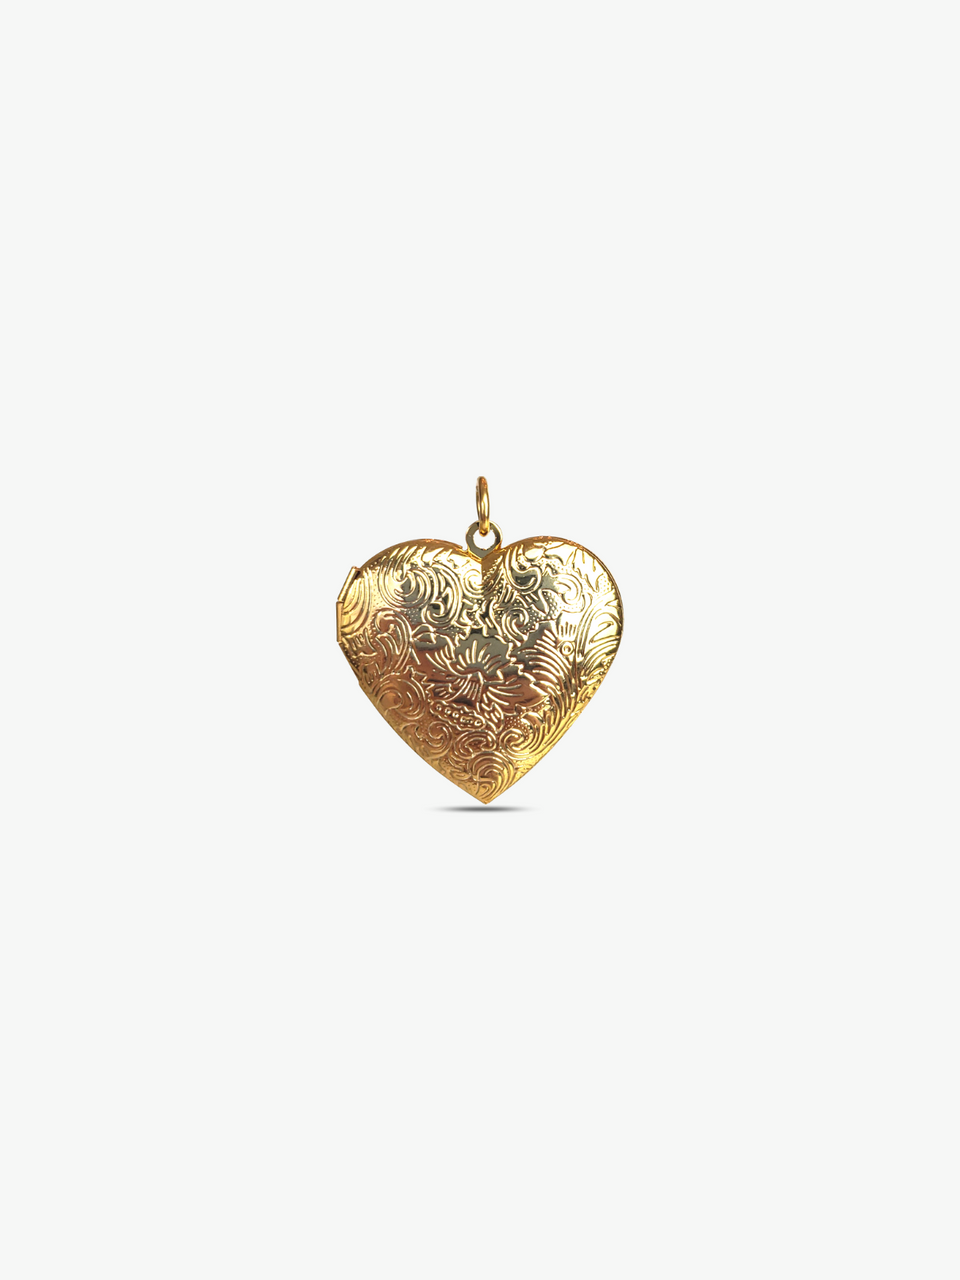 Gold Classy Love Heart LV Letter Logo Stock Illustration